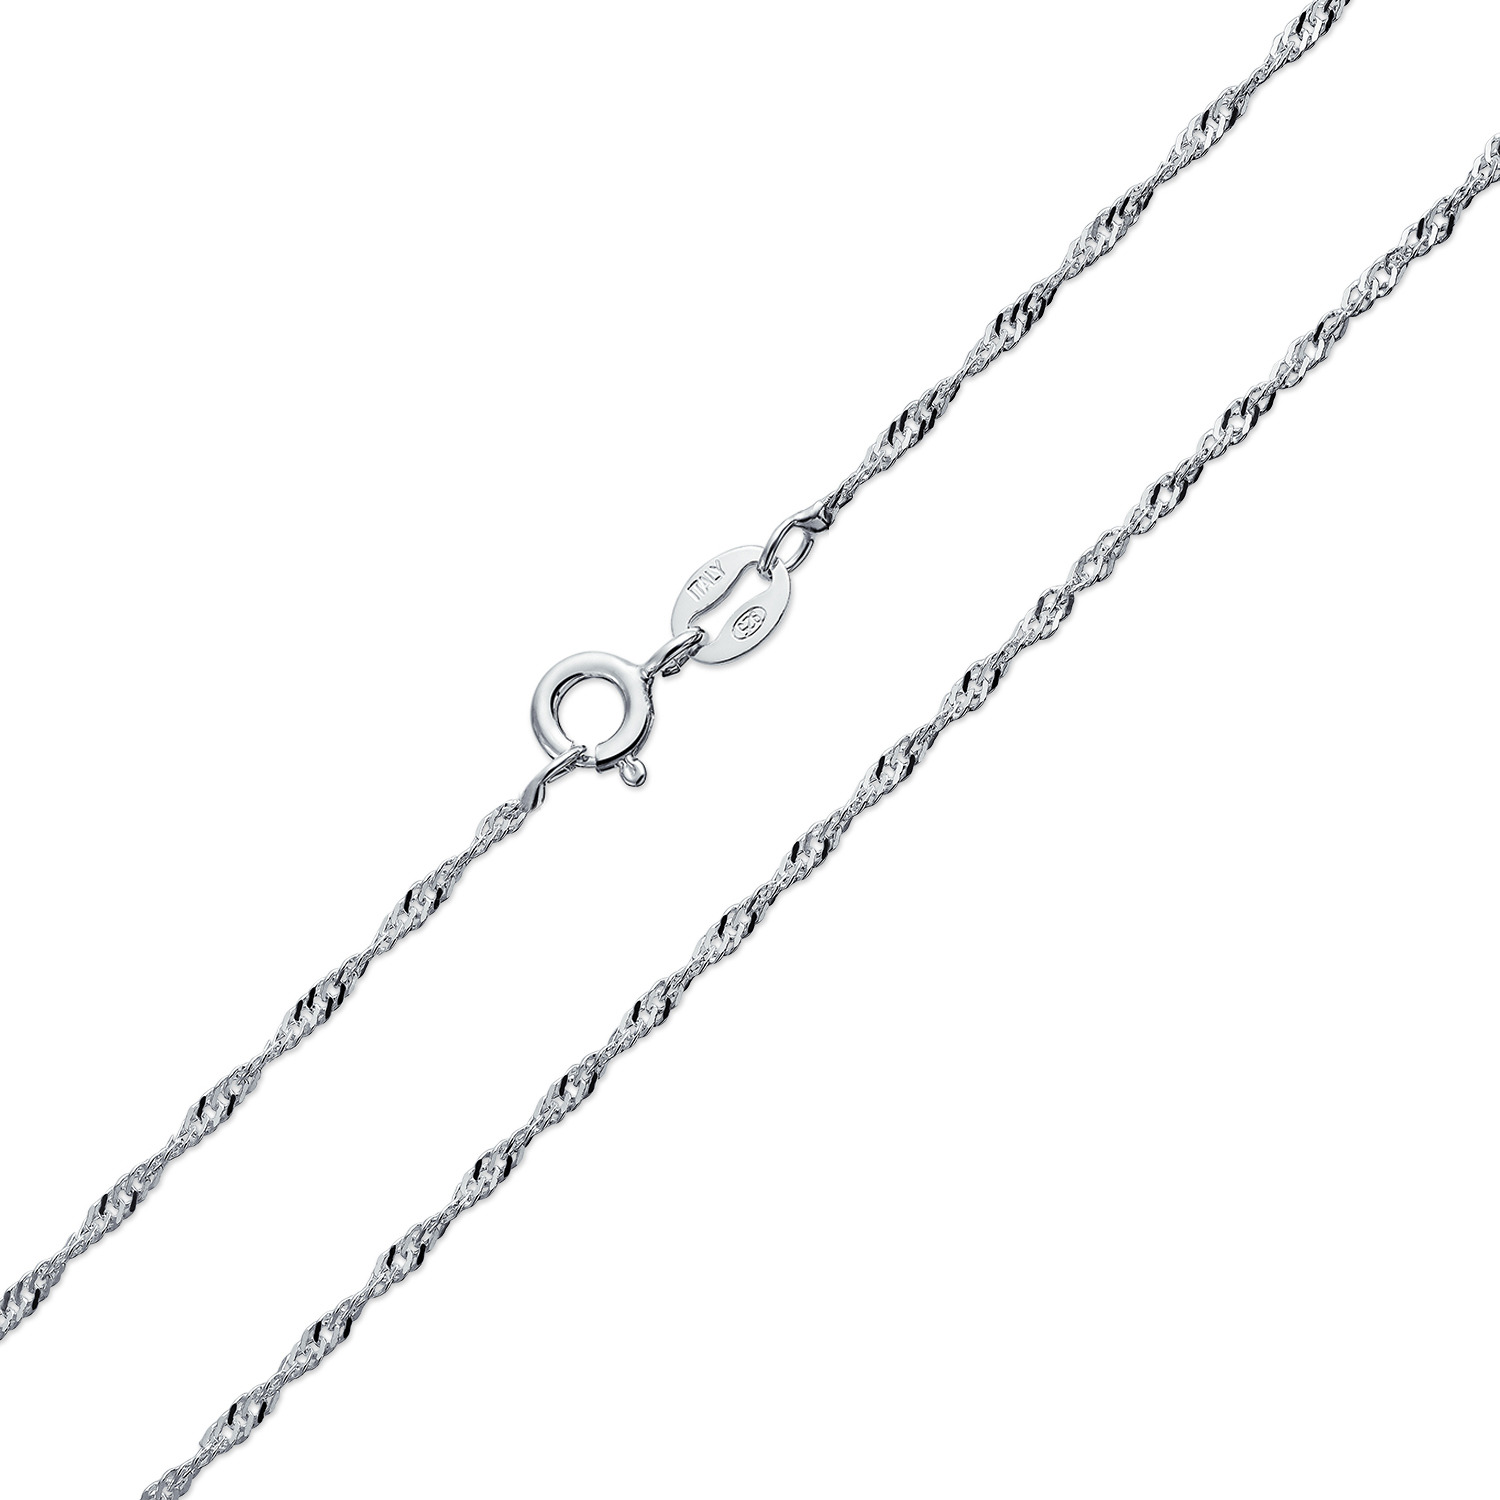 Šperky4U Tenký stříbrný řetízek lambada - kroucený, délka 40 cm - NB-7041-40